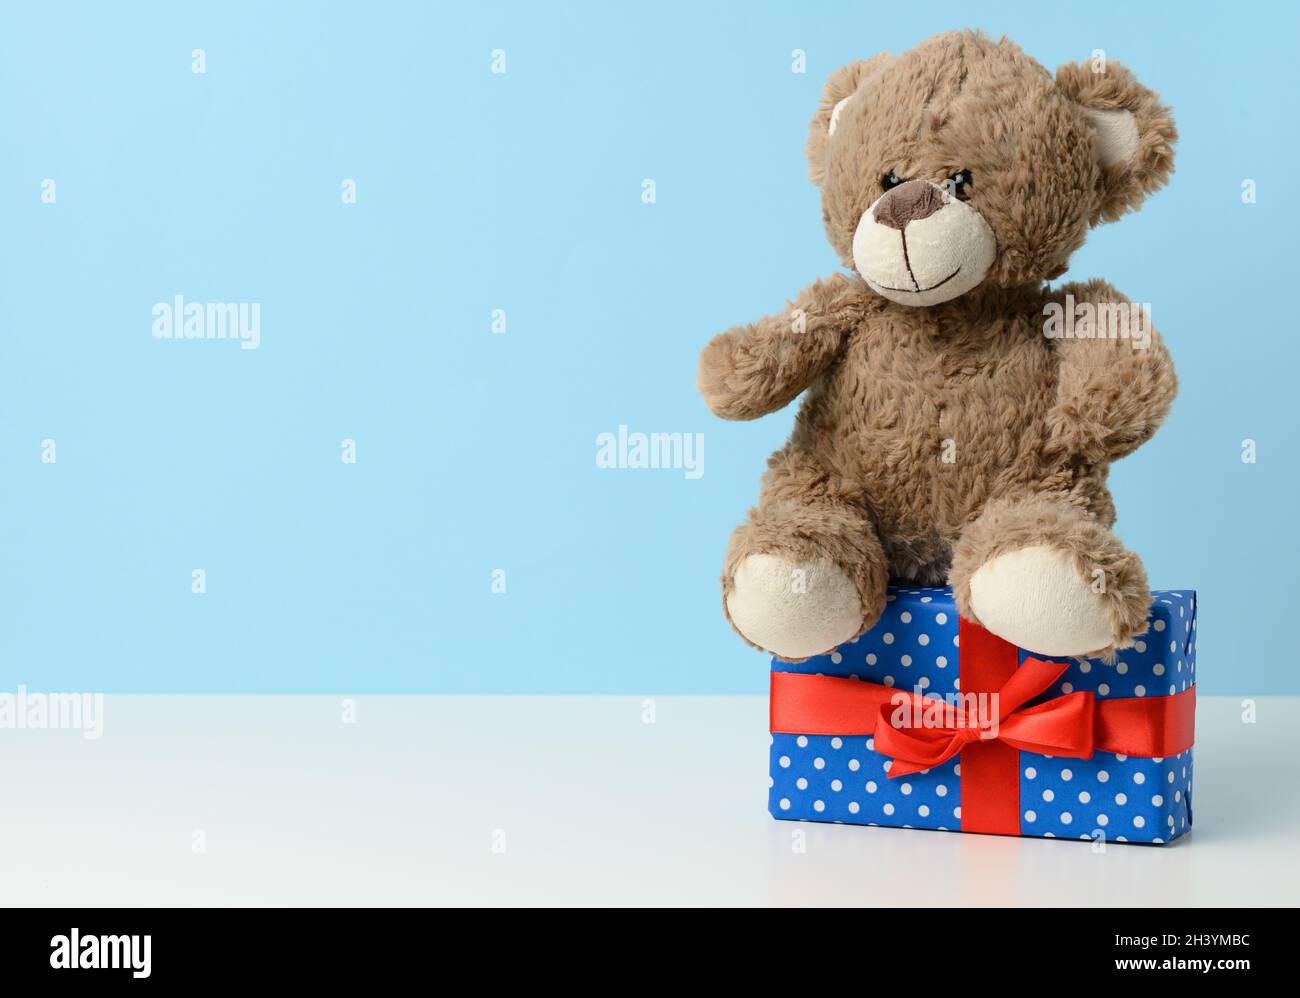 Lindo oso de peluche marrón sosteniendo una caja envuelta en papel azul y cinta de seda roja sobre mesa blanca. Premio y felicitaciones Foto de stock